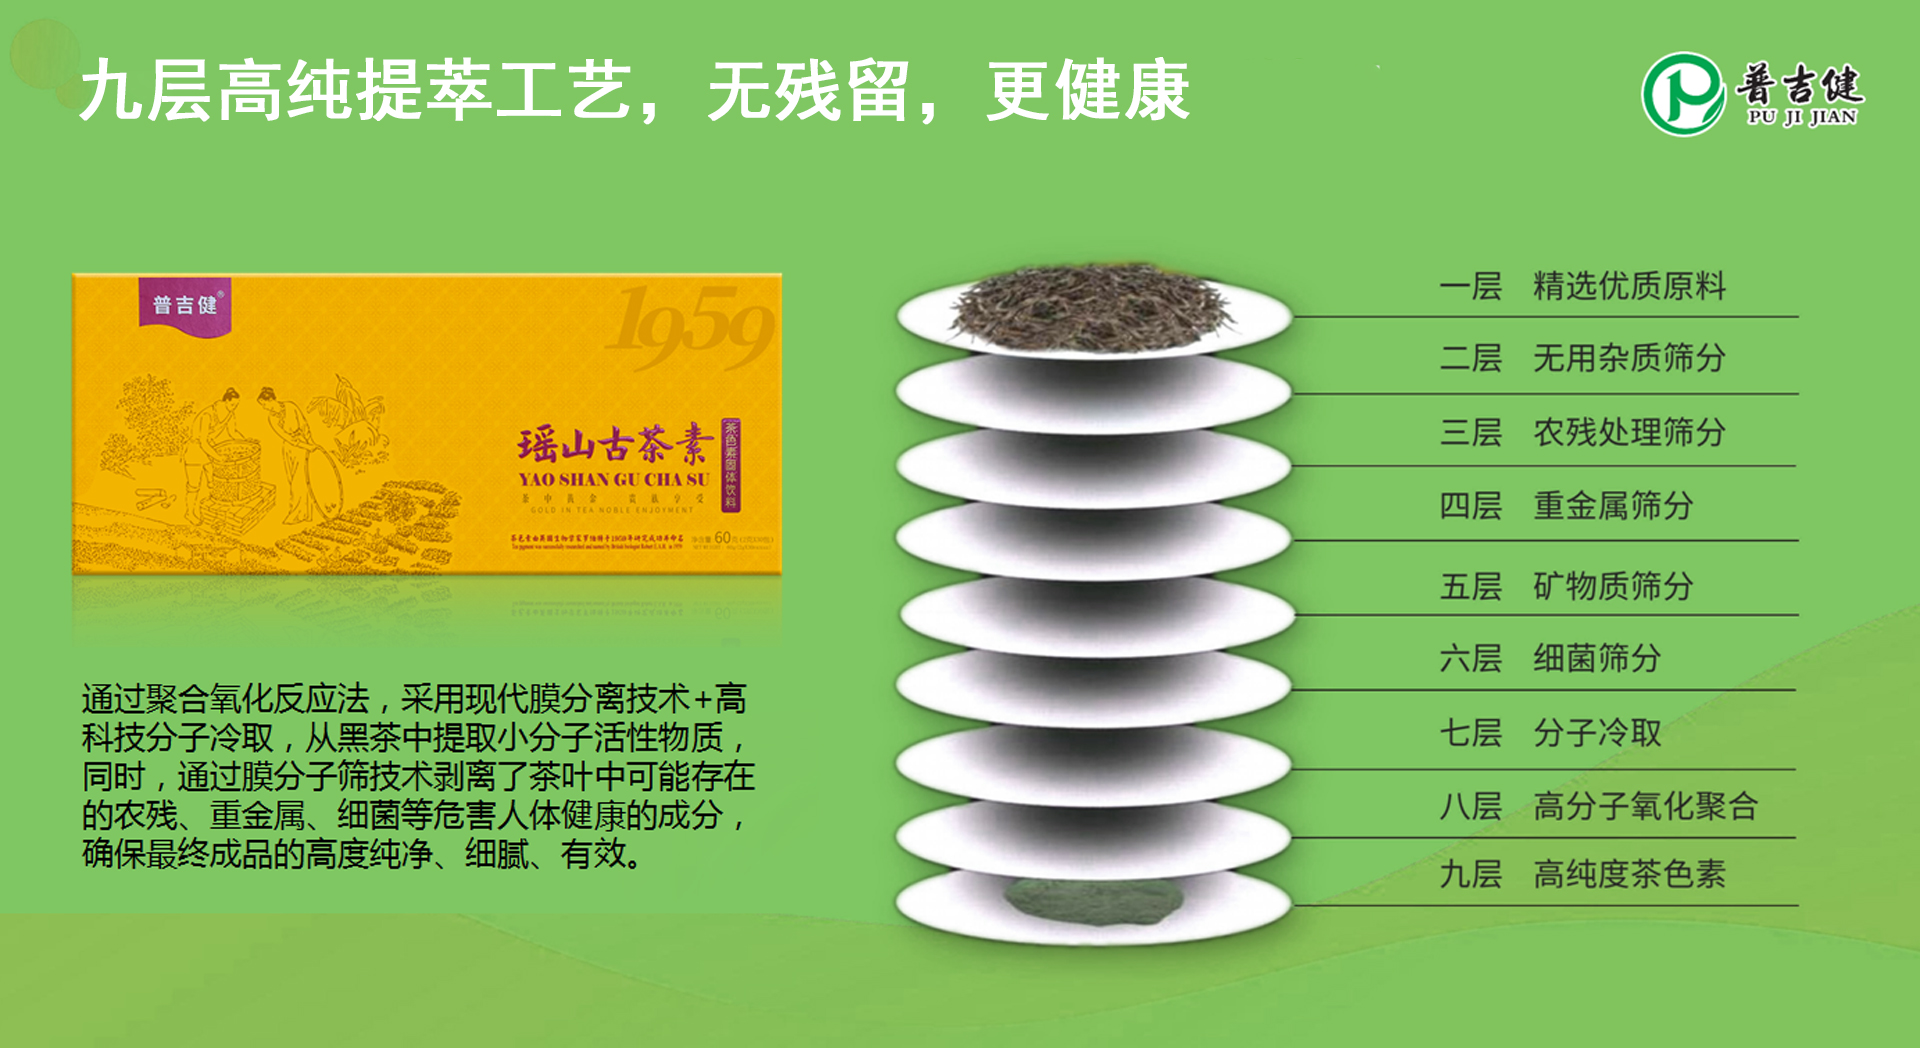 中国首家黑茶茶色素品牌-专访普吉健茶色素